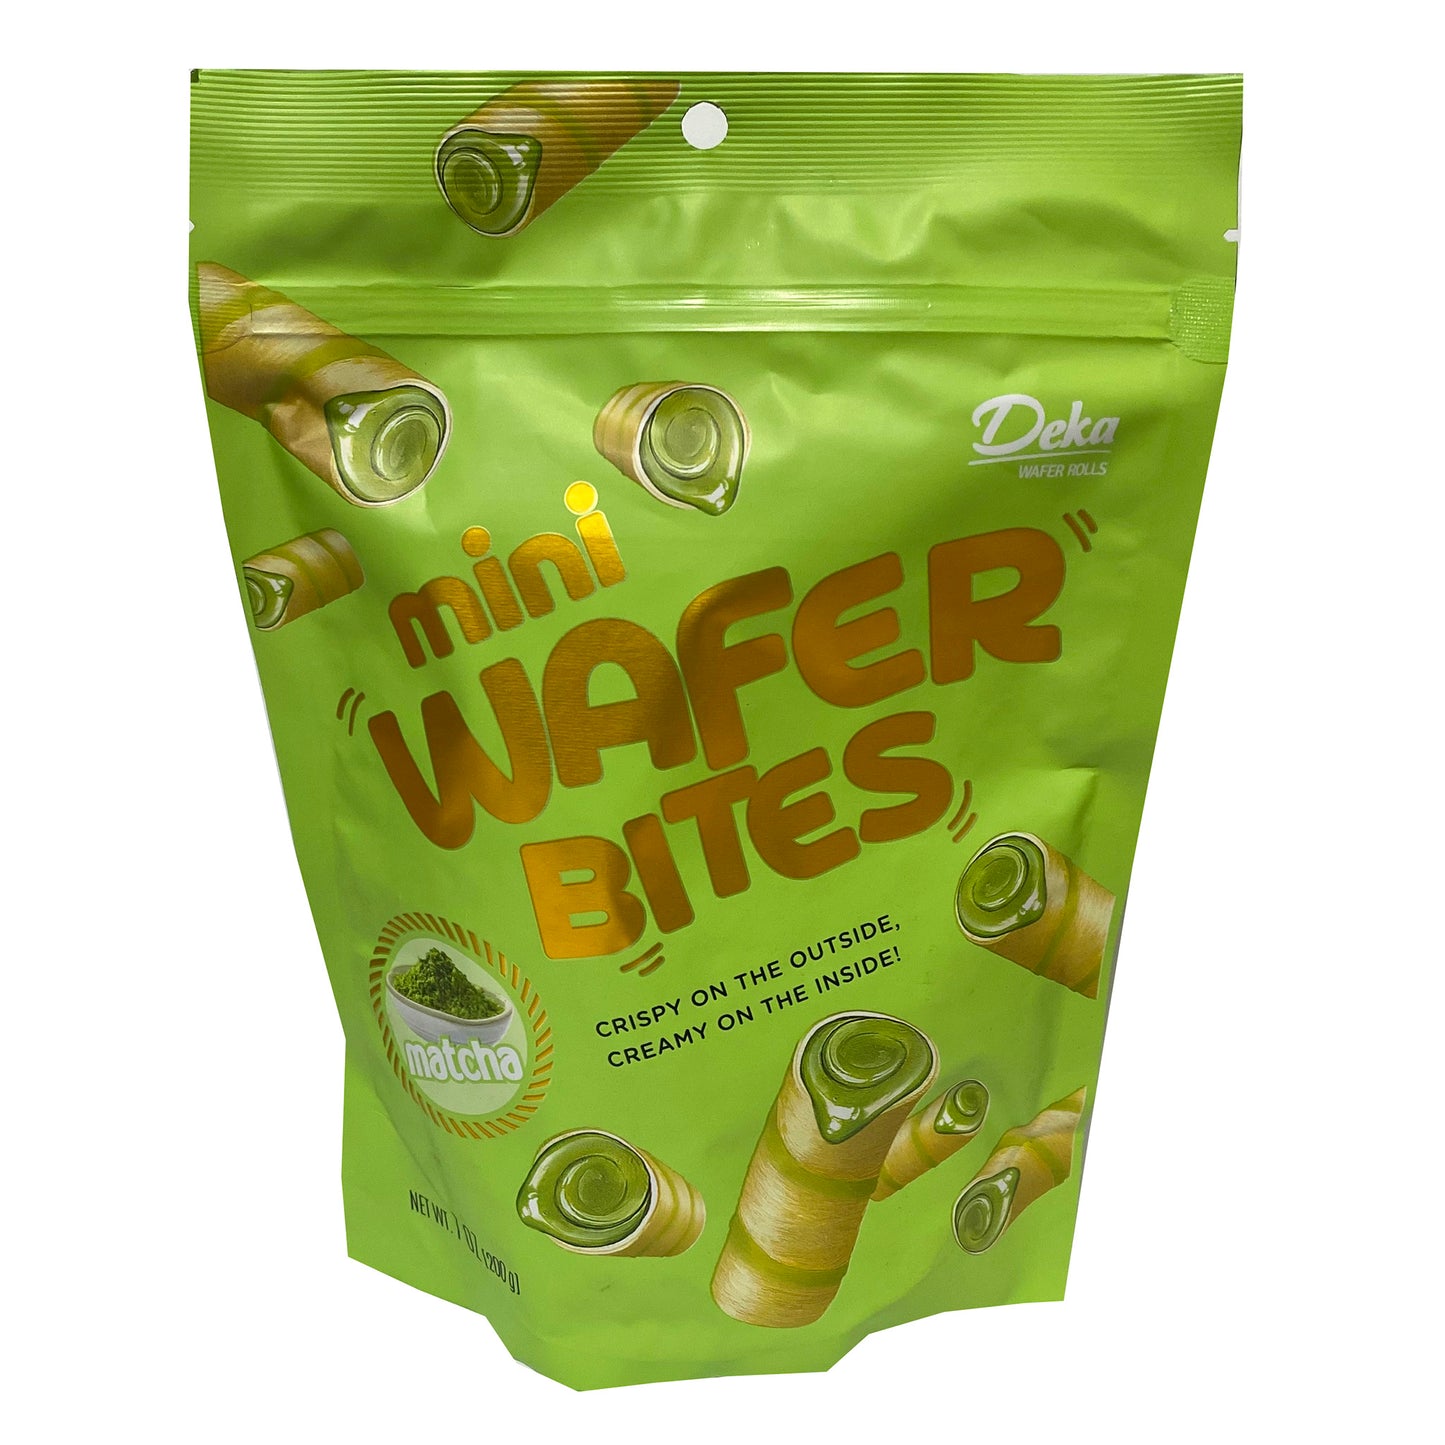 Front graphic image of Deka Wafer Bites Matcha Flavor 7oz